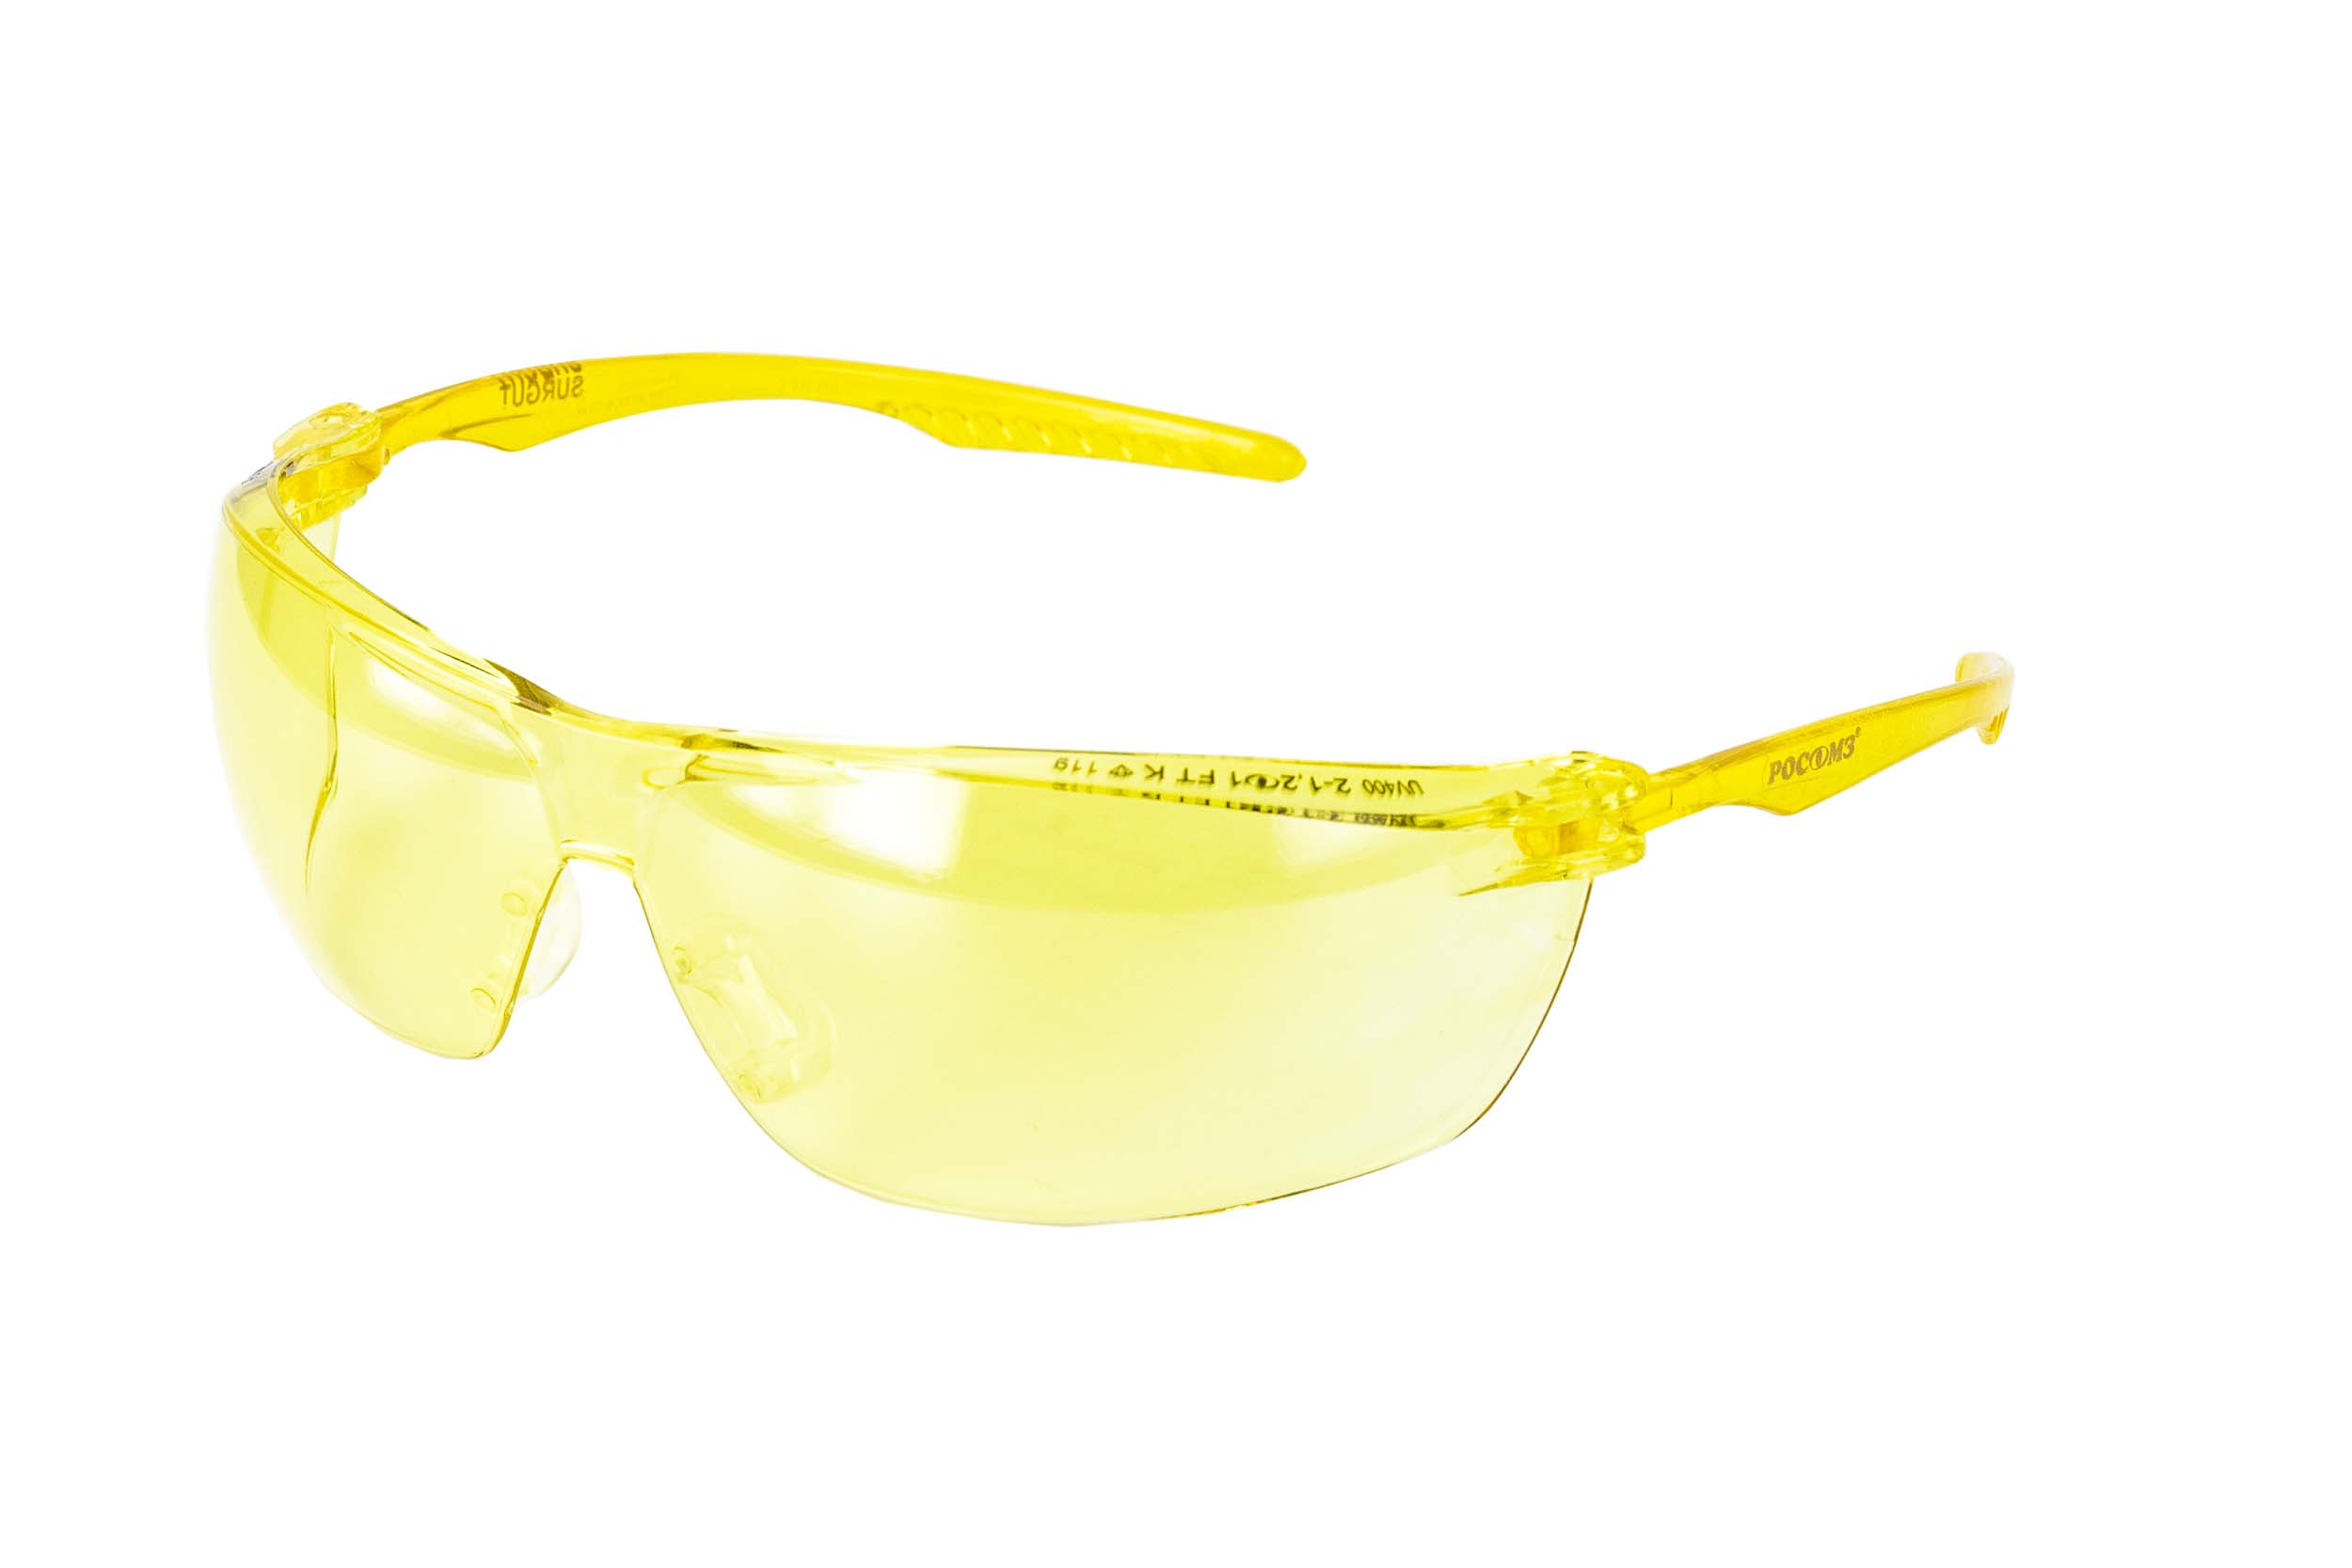 О88 SURGUT CONTRAST super (2-1,2 РС) очки защитные открытые с мягким носоупором